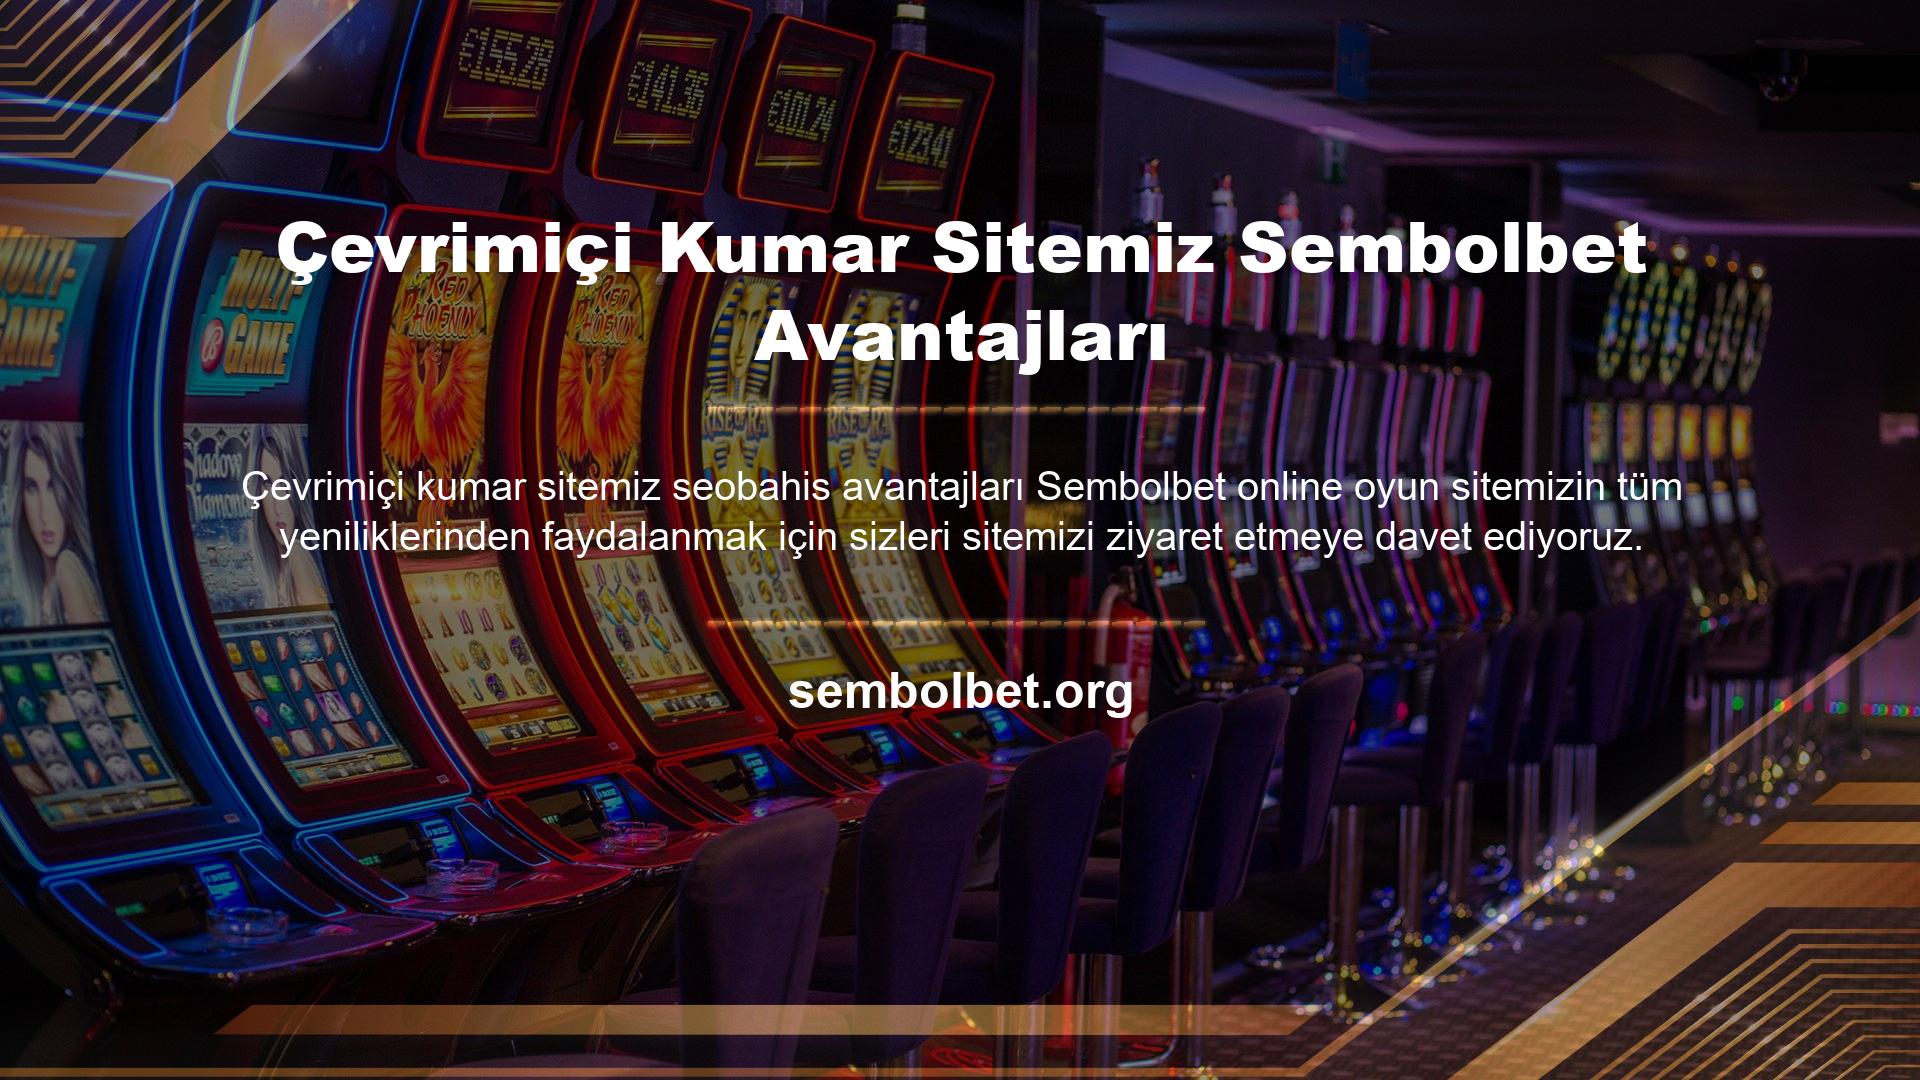 Kullanıcılarımıza sağladığımız iletişim bilgilerine ek olarak sitemizde profesyonelce hazırlanmış çok çeşitli casino oyunları bulunmaktadır